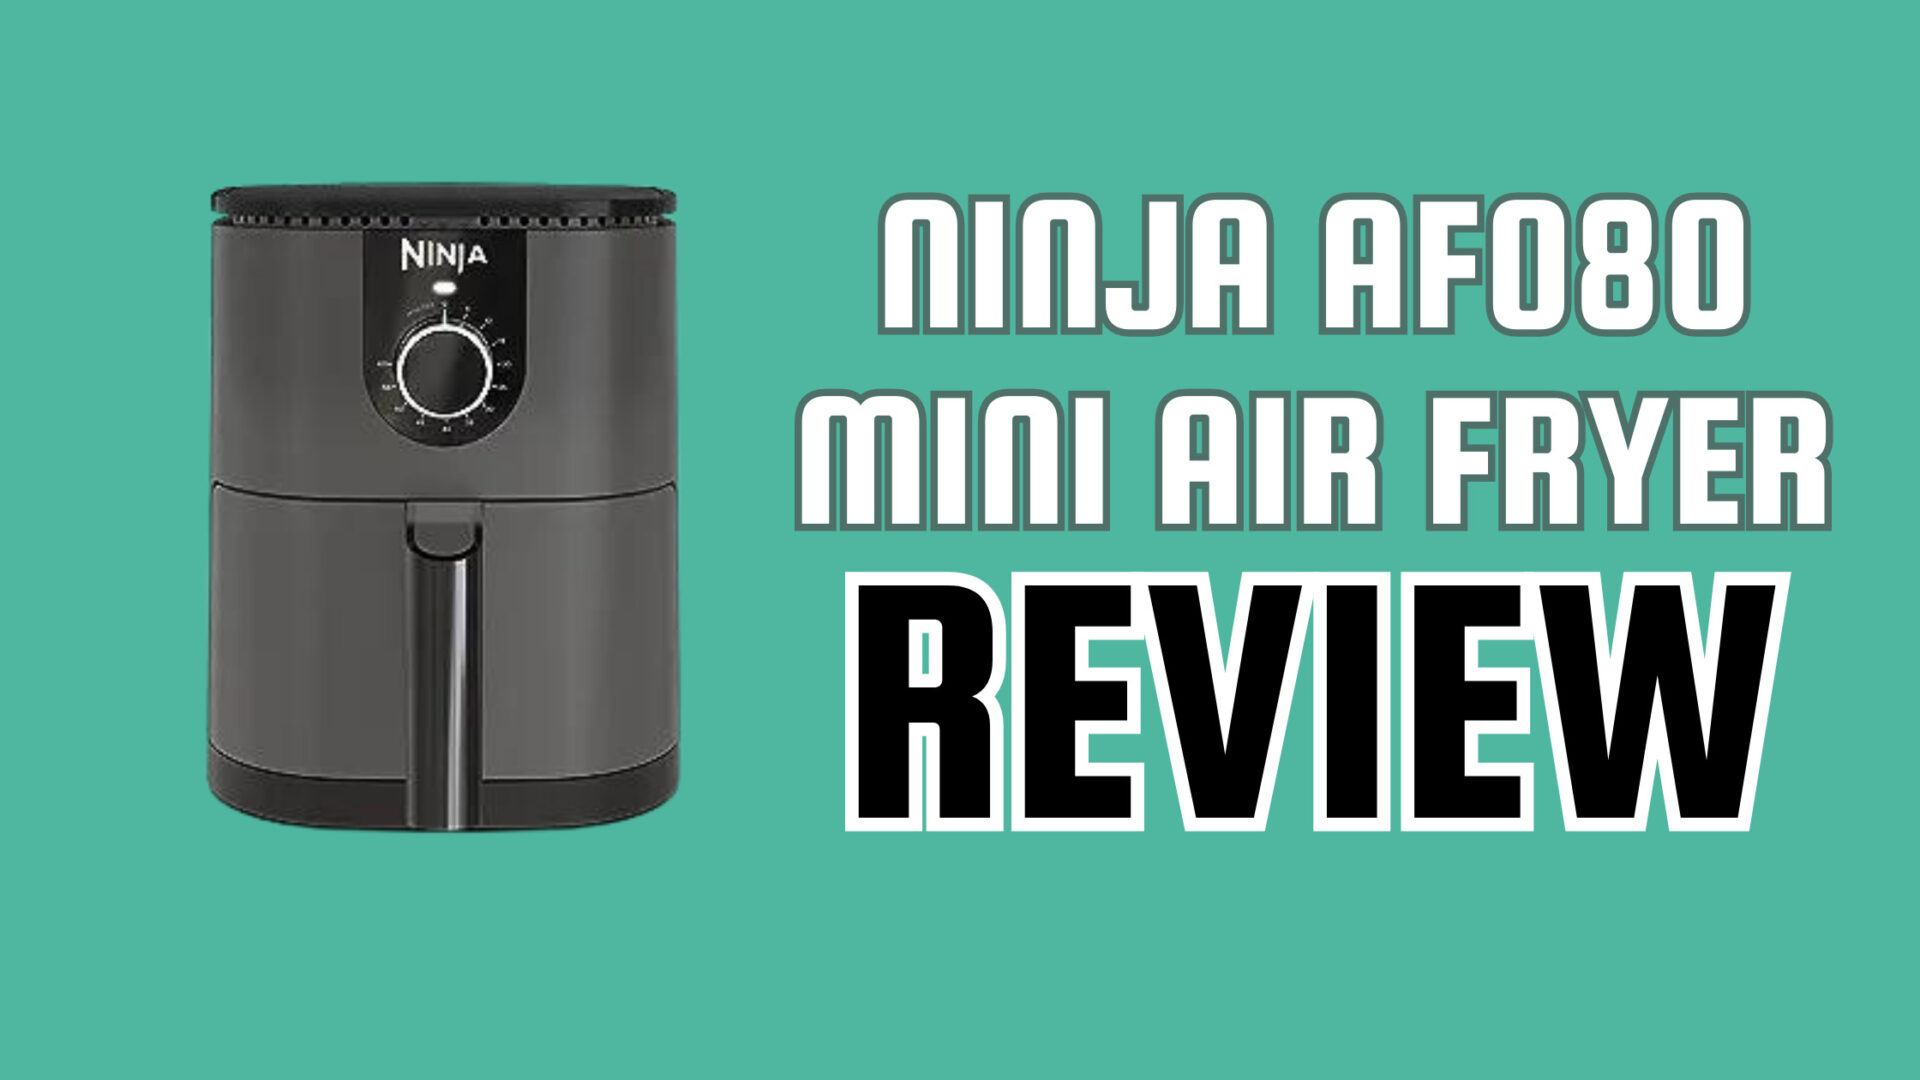  Ninja AF080 Mini Air Fryer, 2 Quarts Capacity, Compact